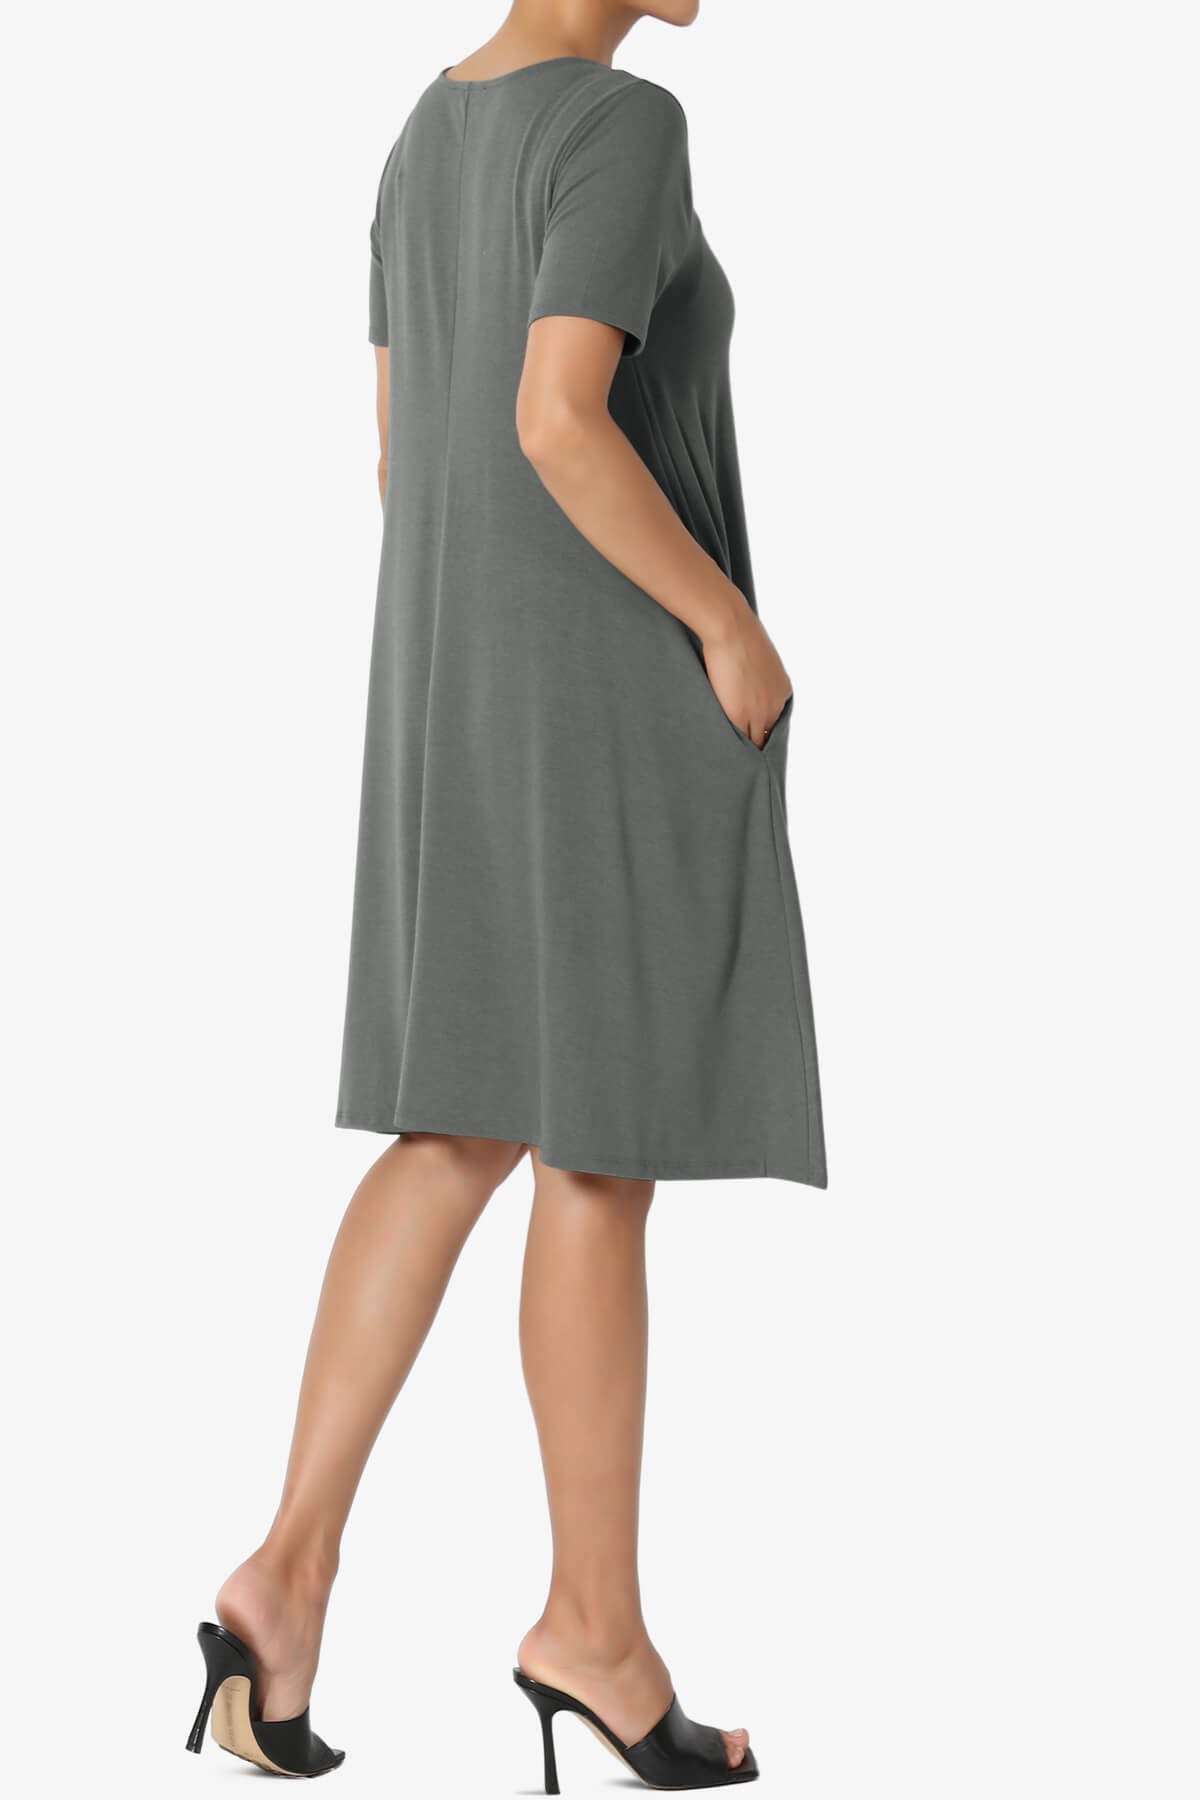 Allie Short Sleeve Jersey A-Line Dress ASH GREY_4